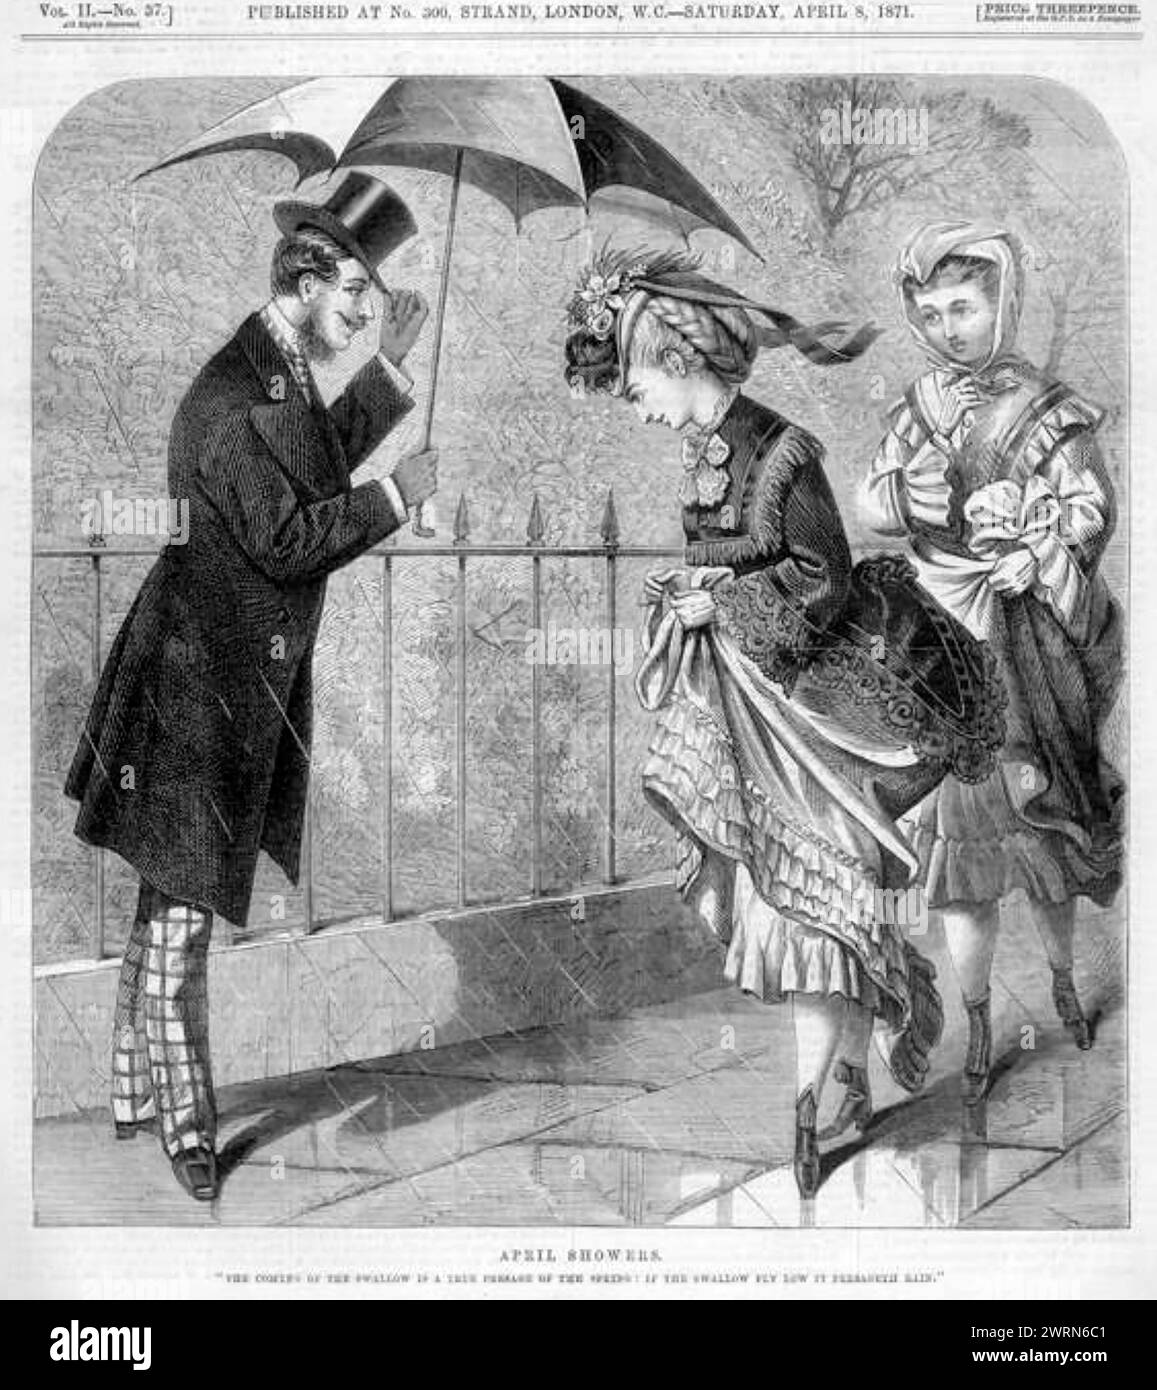 WIE MAN Eine DAME in einem englischen magaΩine aus dem 19. Jahrhundert BEGRÜSST Stockfoto